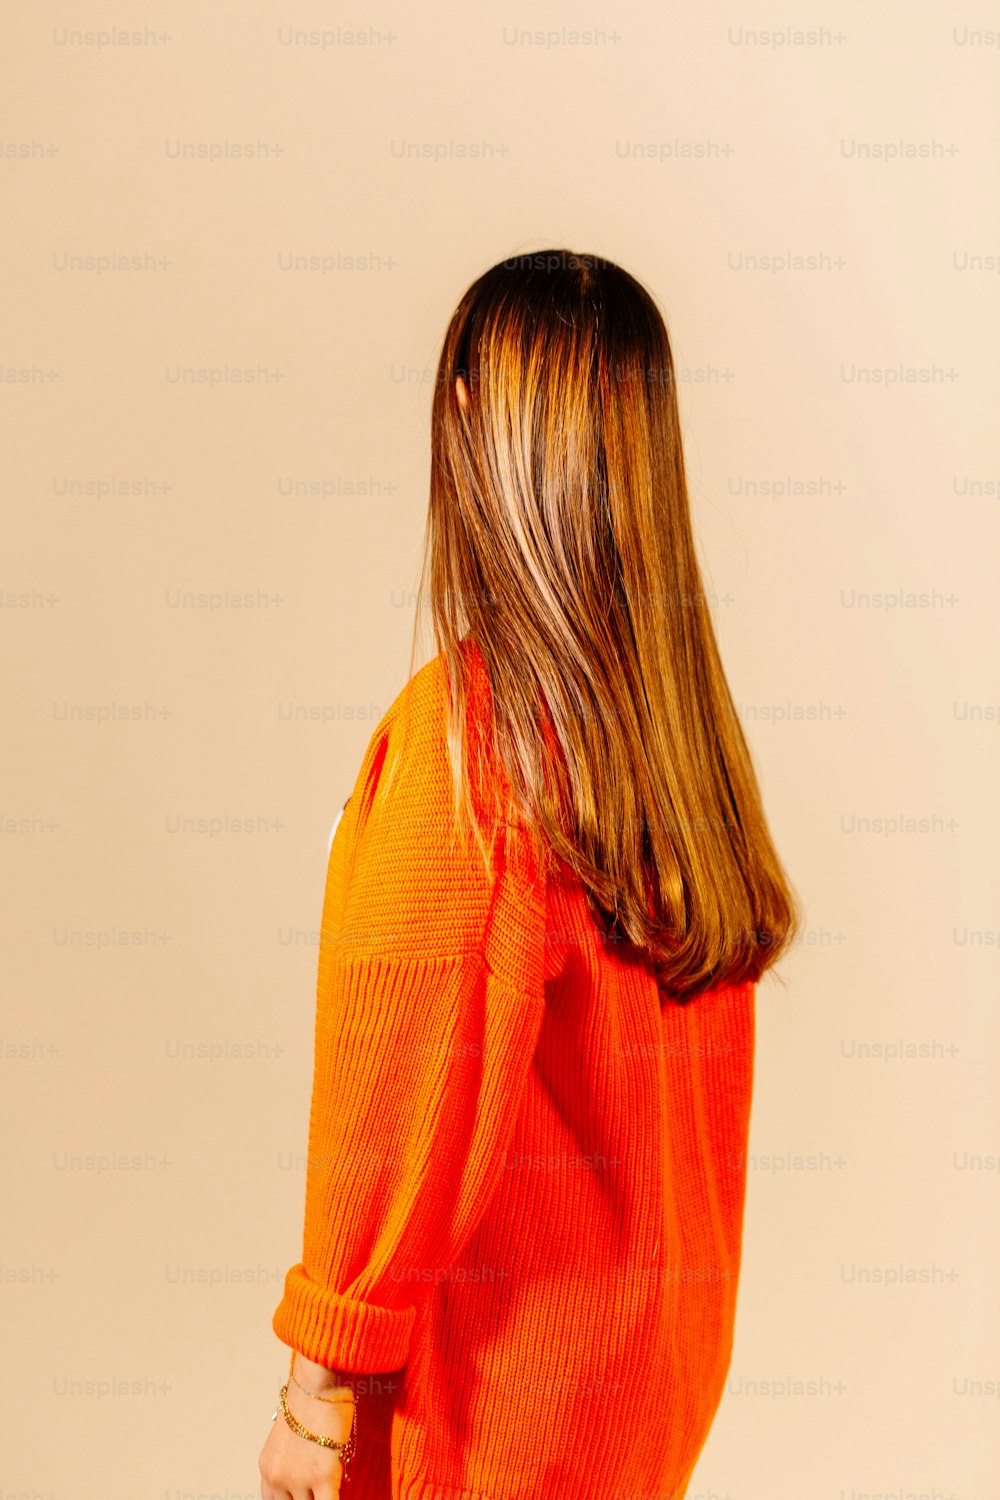 a parte de trás da cabeça de uma mulher vestindo um suéter laranja